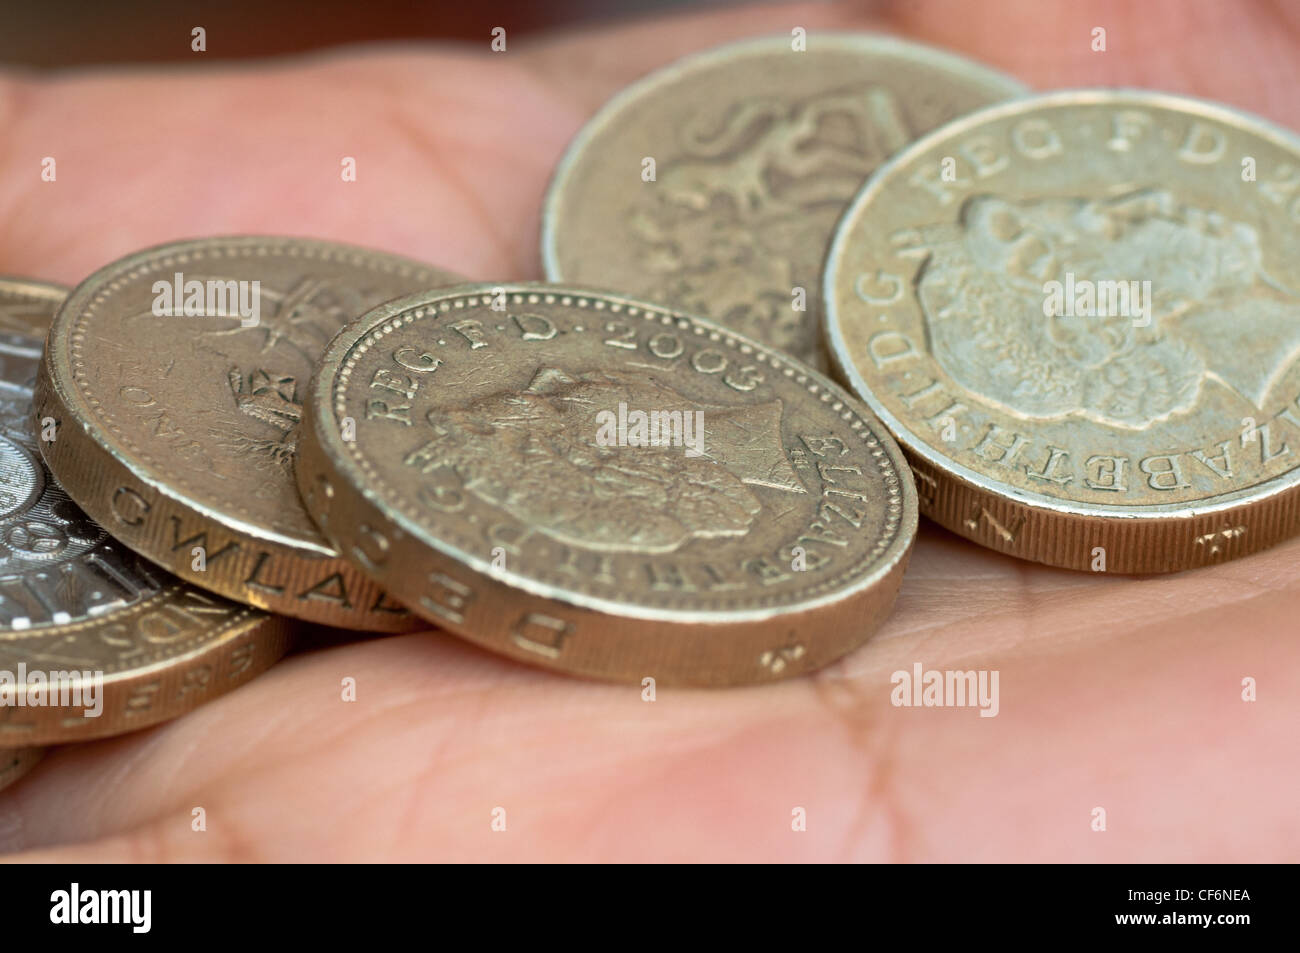 Contanti in mano. £ 1 monete. Regno Unito. Foto Stock